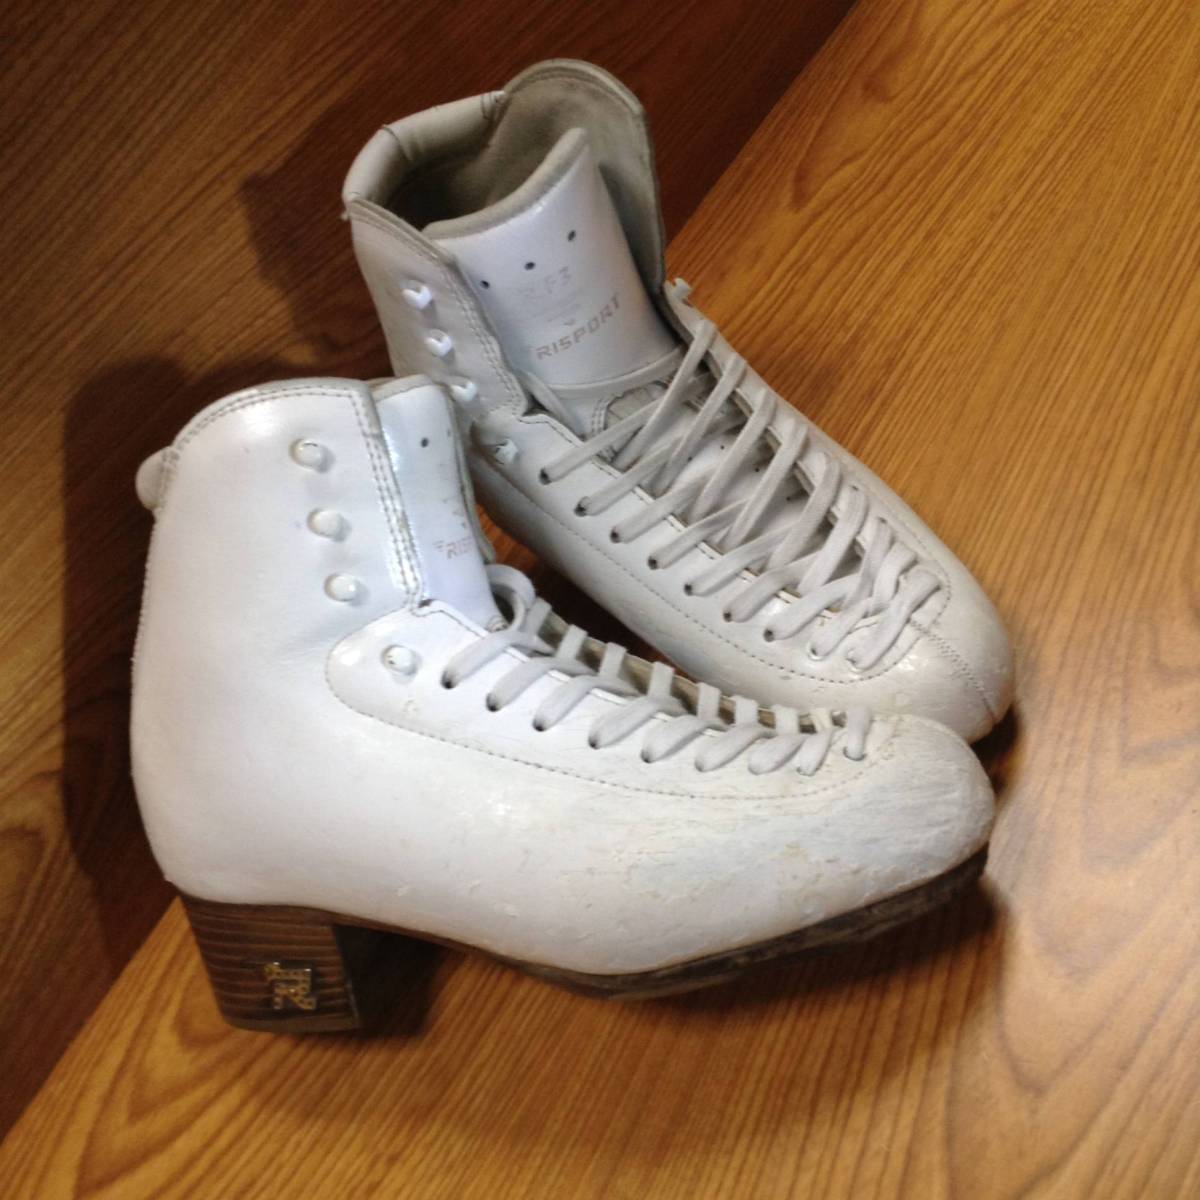 11900円 【代引き不可】 フィギュアスケート靴リスポートRF4 240新品未使用